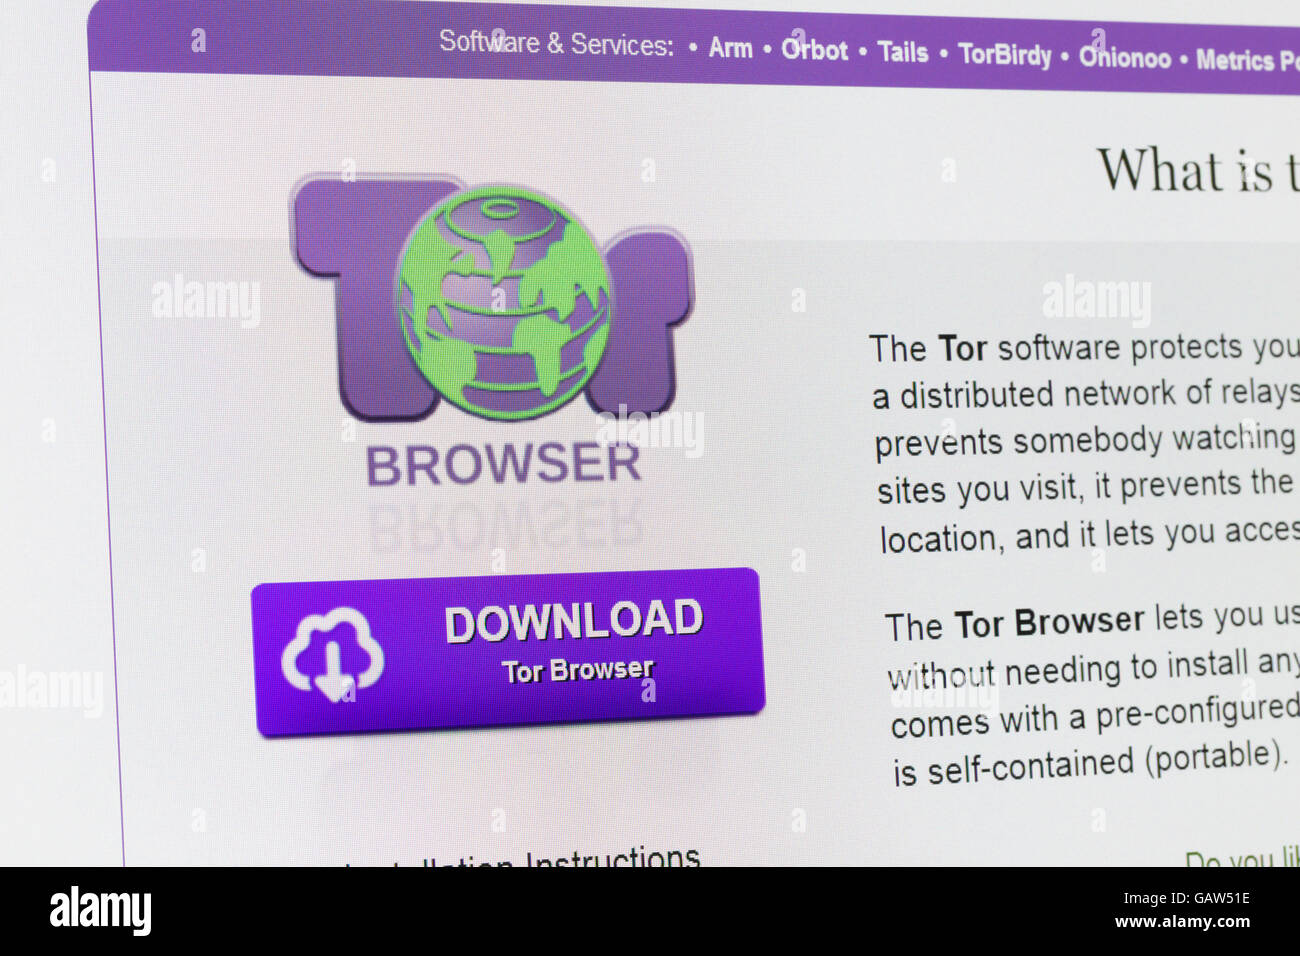 Tor browser images with mega вход тор браузер форум хакеров megaruzxpnew4af